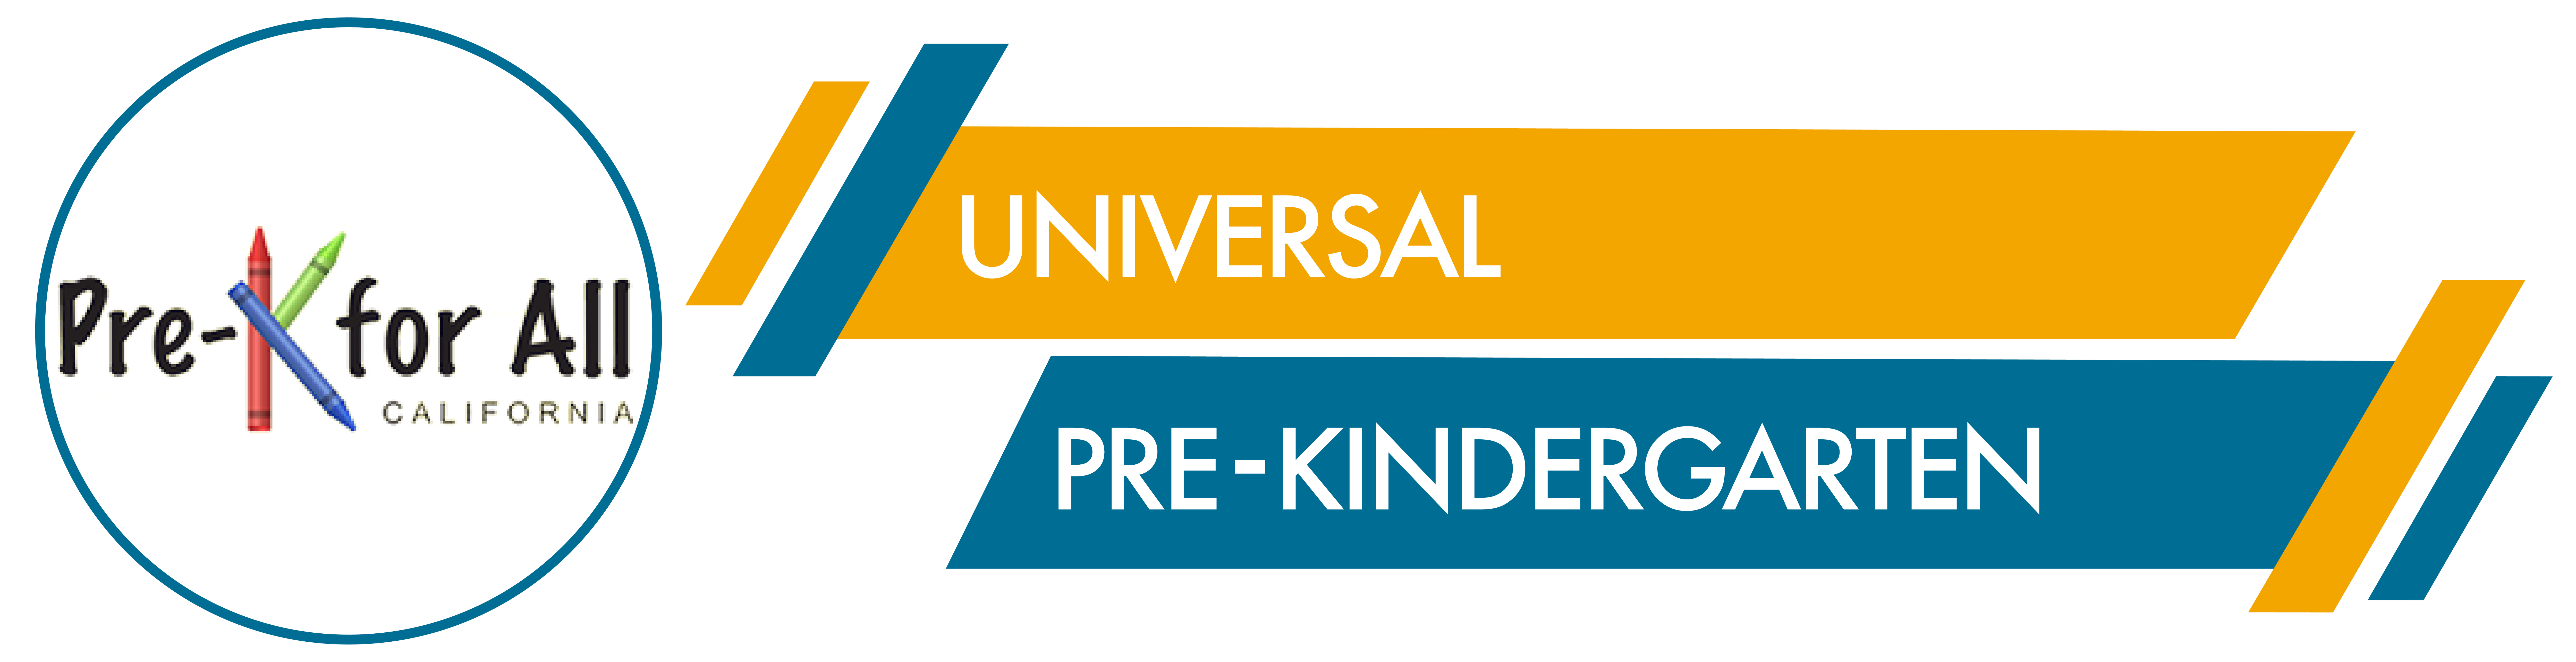 Universal Pre-Kindergarten Banner